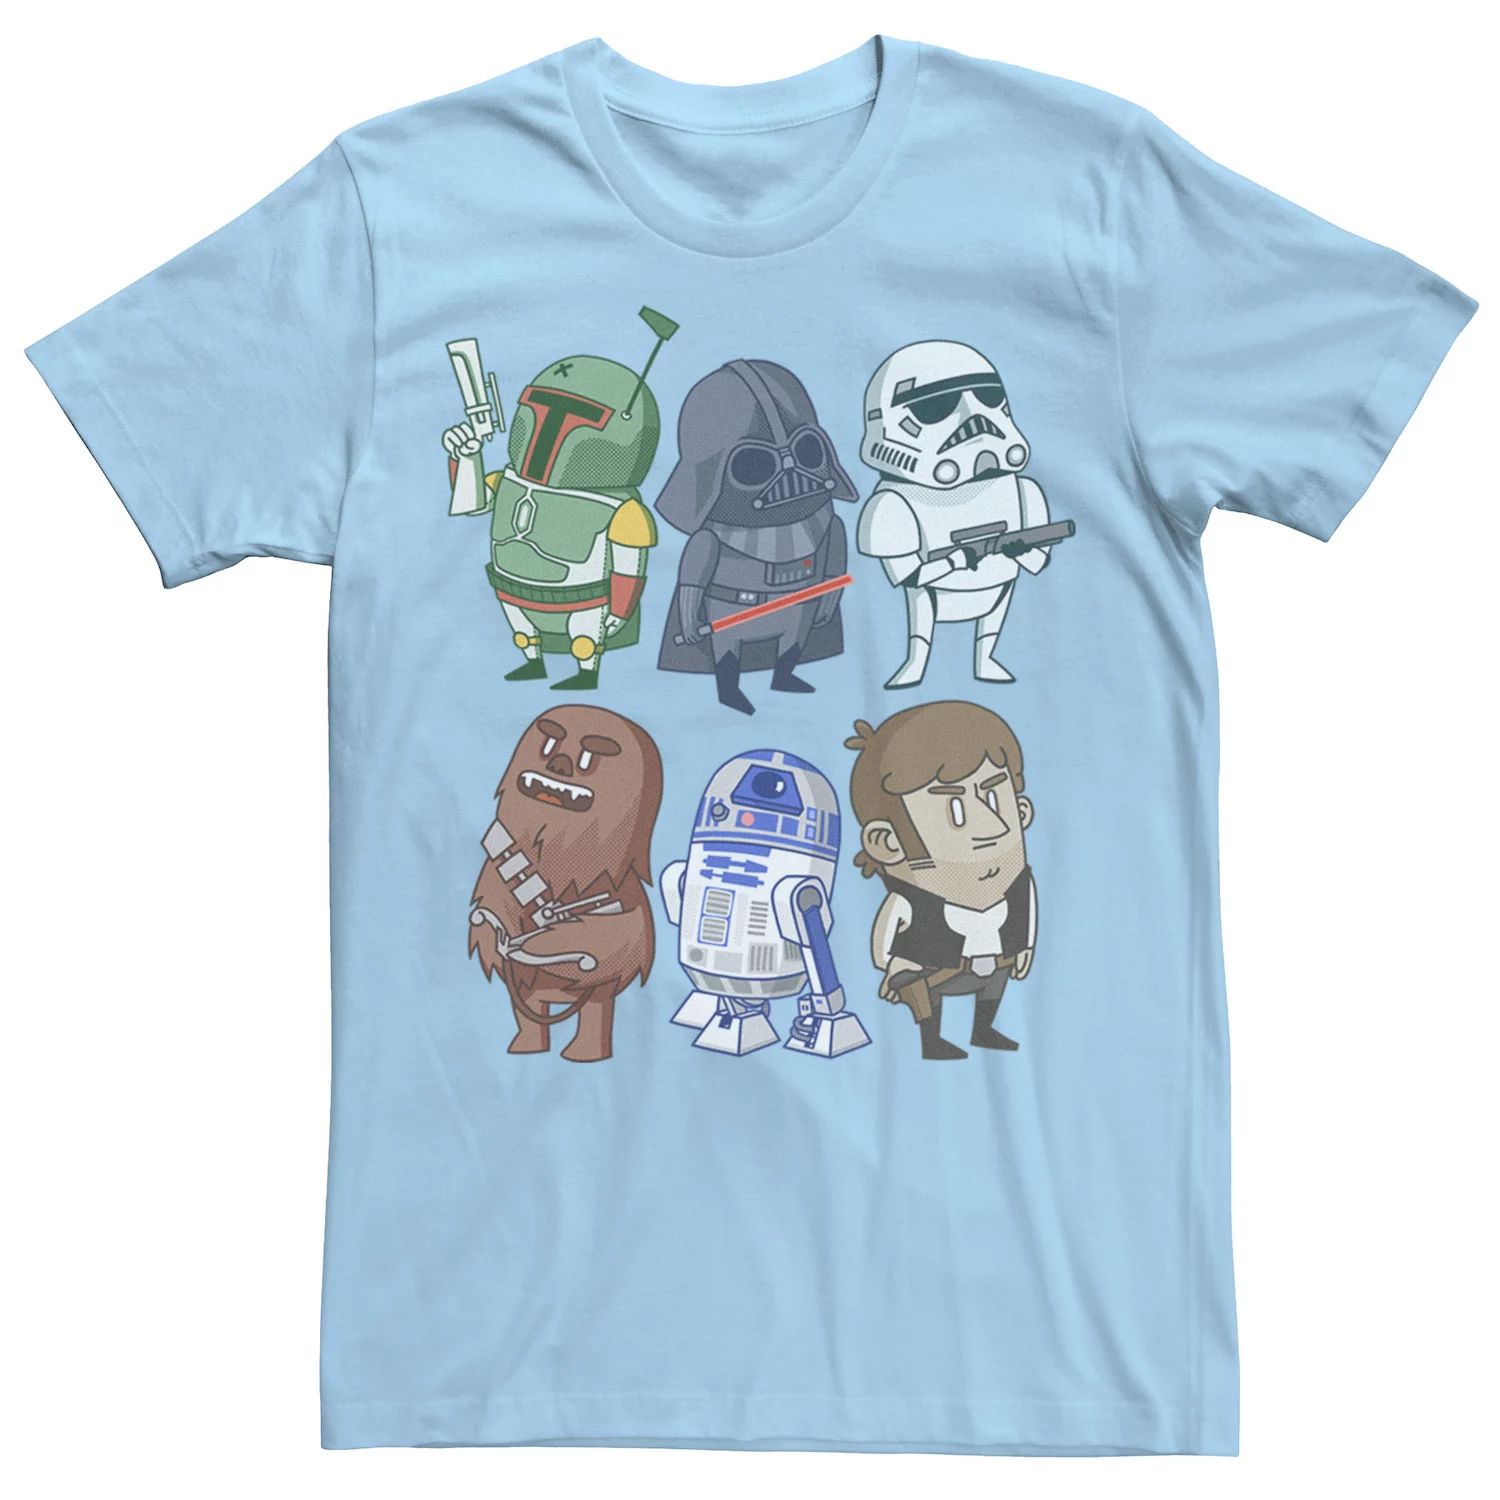 Мужская футболка с изображением персонажей «Звездных войн» Star Wars, светло-синий